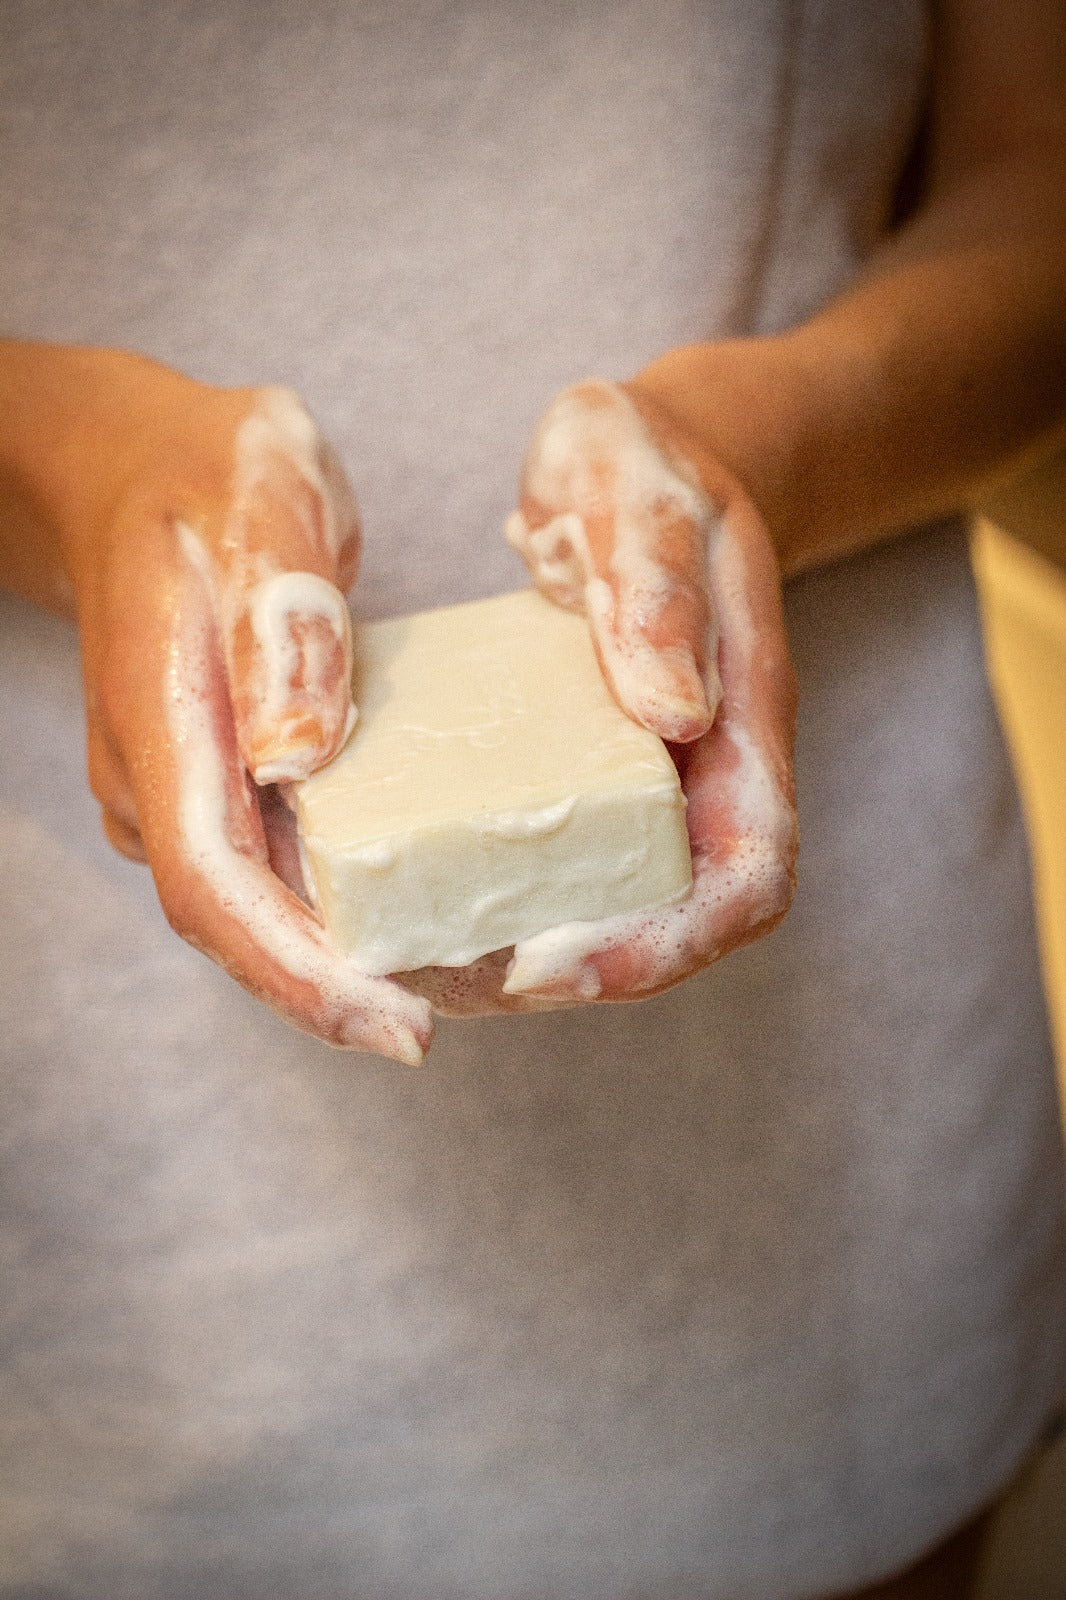 Le savon solide au lait de chèvre bio et amande douce : votre peau sèche et irritée va l'adorer 😍